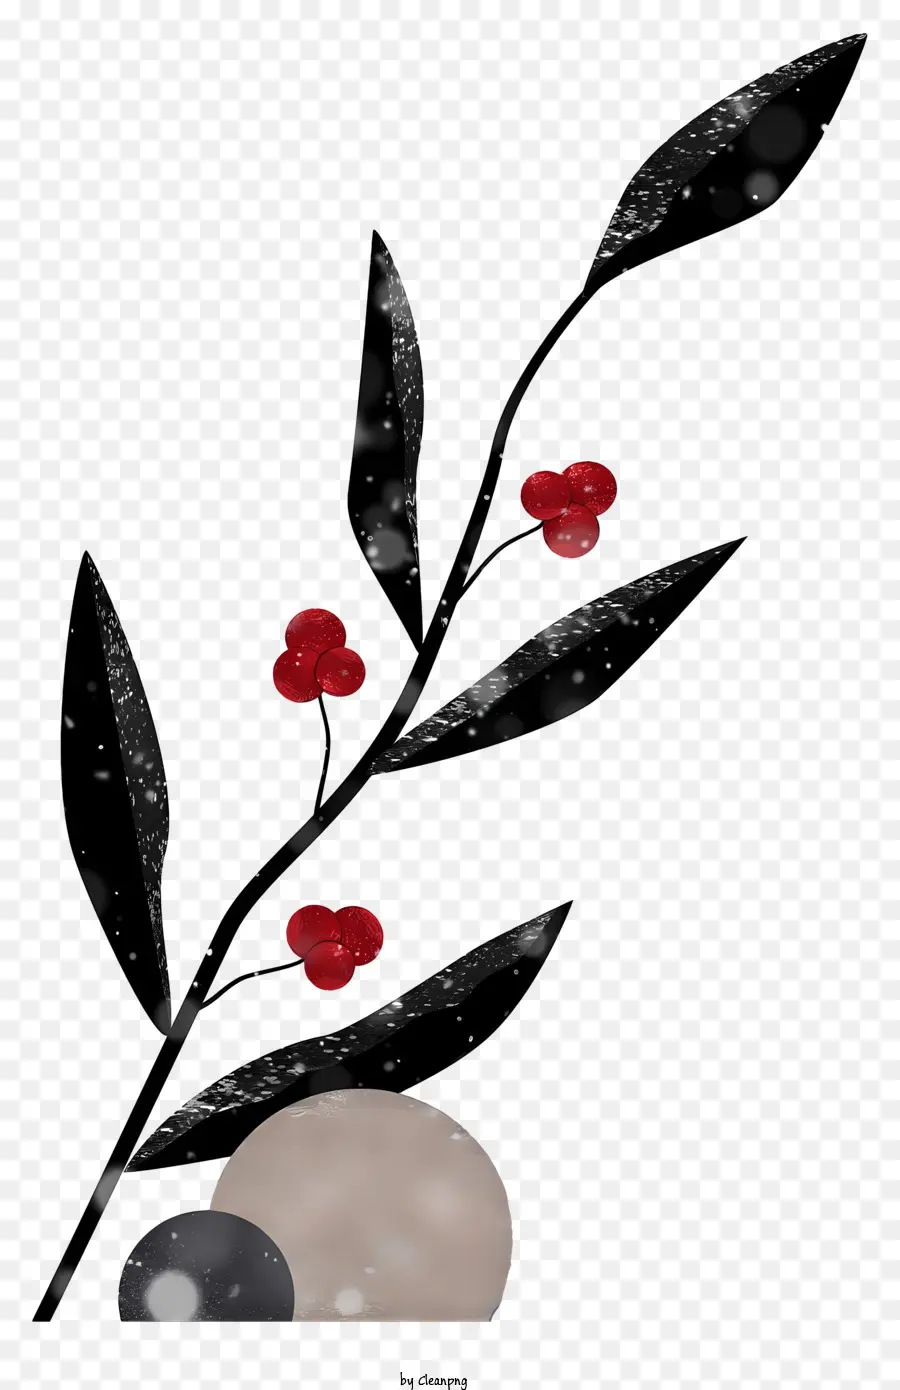 bacche rosse ramo sfondo nero sottofondo design minimalista pulito estetico - Immagine minimalista del ramo con bacche rosse